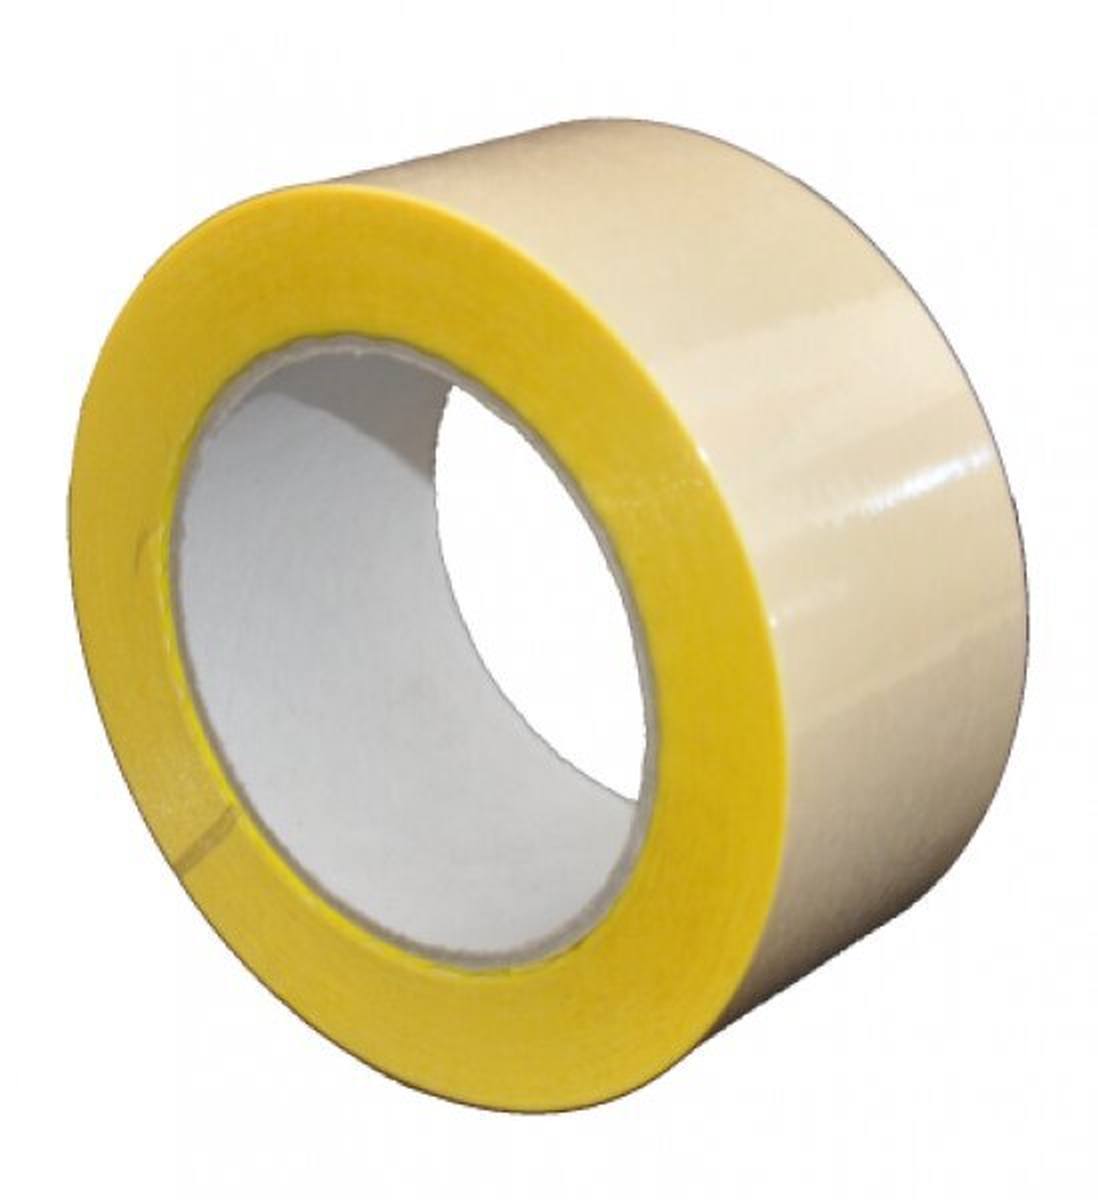 S-K-S 407 Cinta adhesiva de doble cara con soporte de polipropileno, alta / baja adhesividad, amarilla, 300 mm x 50 m, 0,15 mm